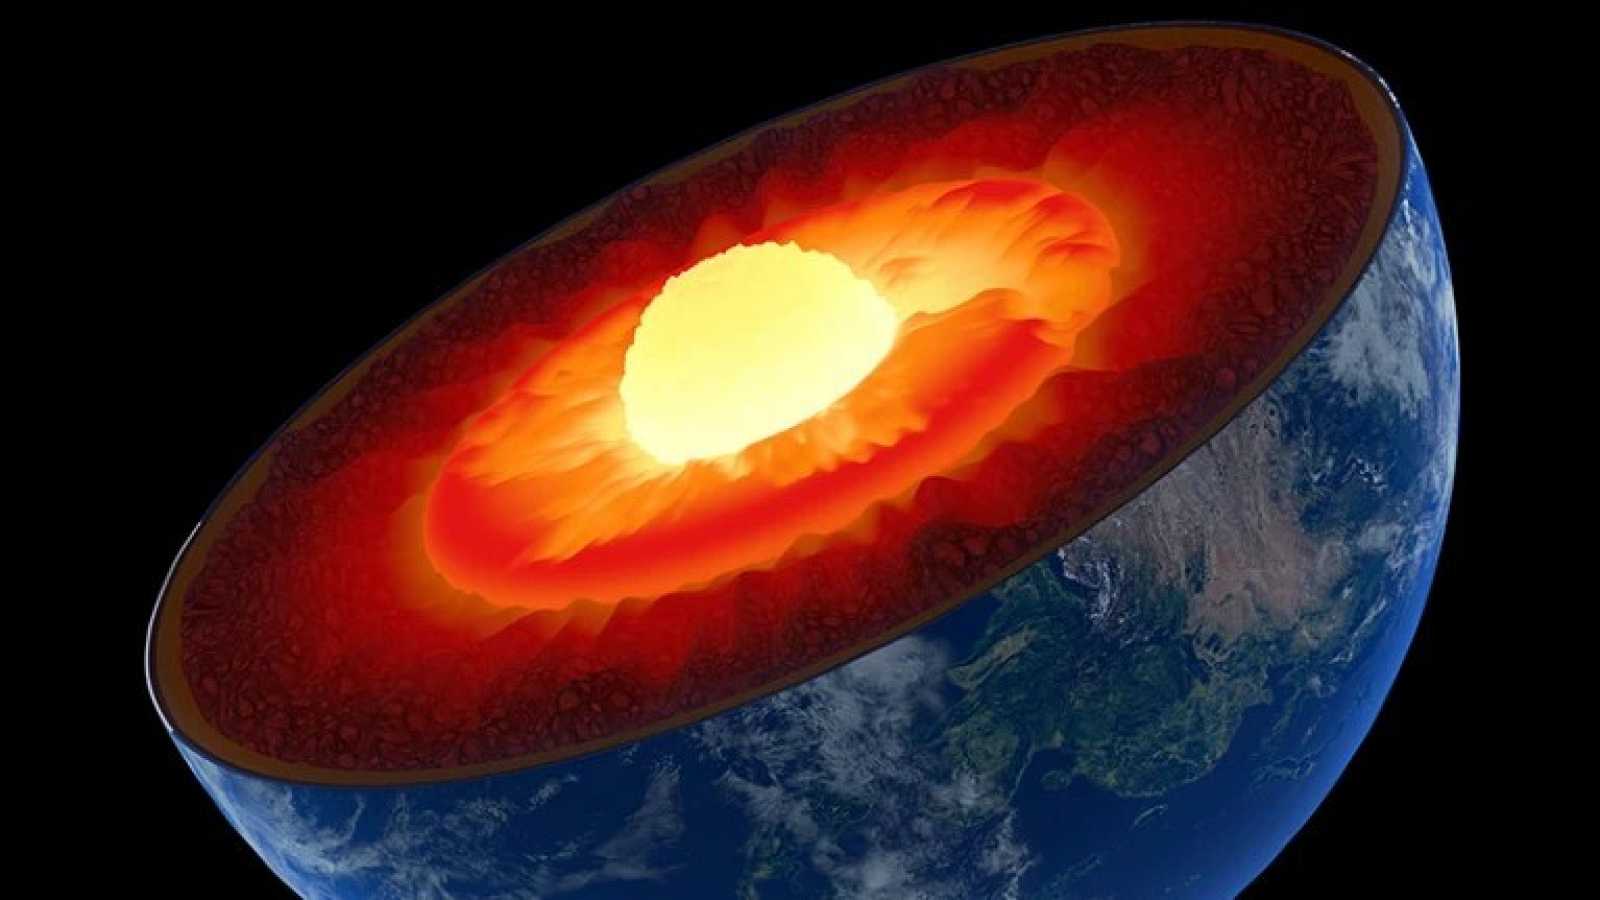 Núcleo interno de la Tierra se detuvo y podría estar invirtiéndose: Estudio